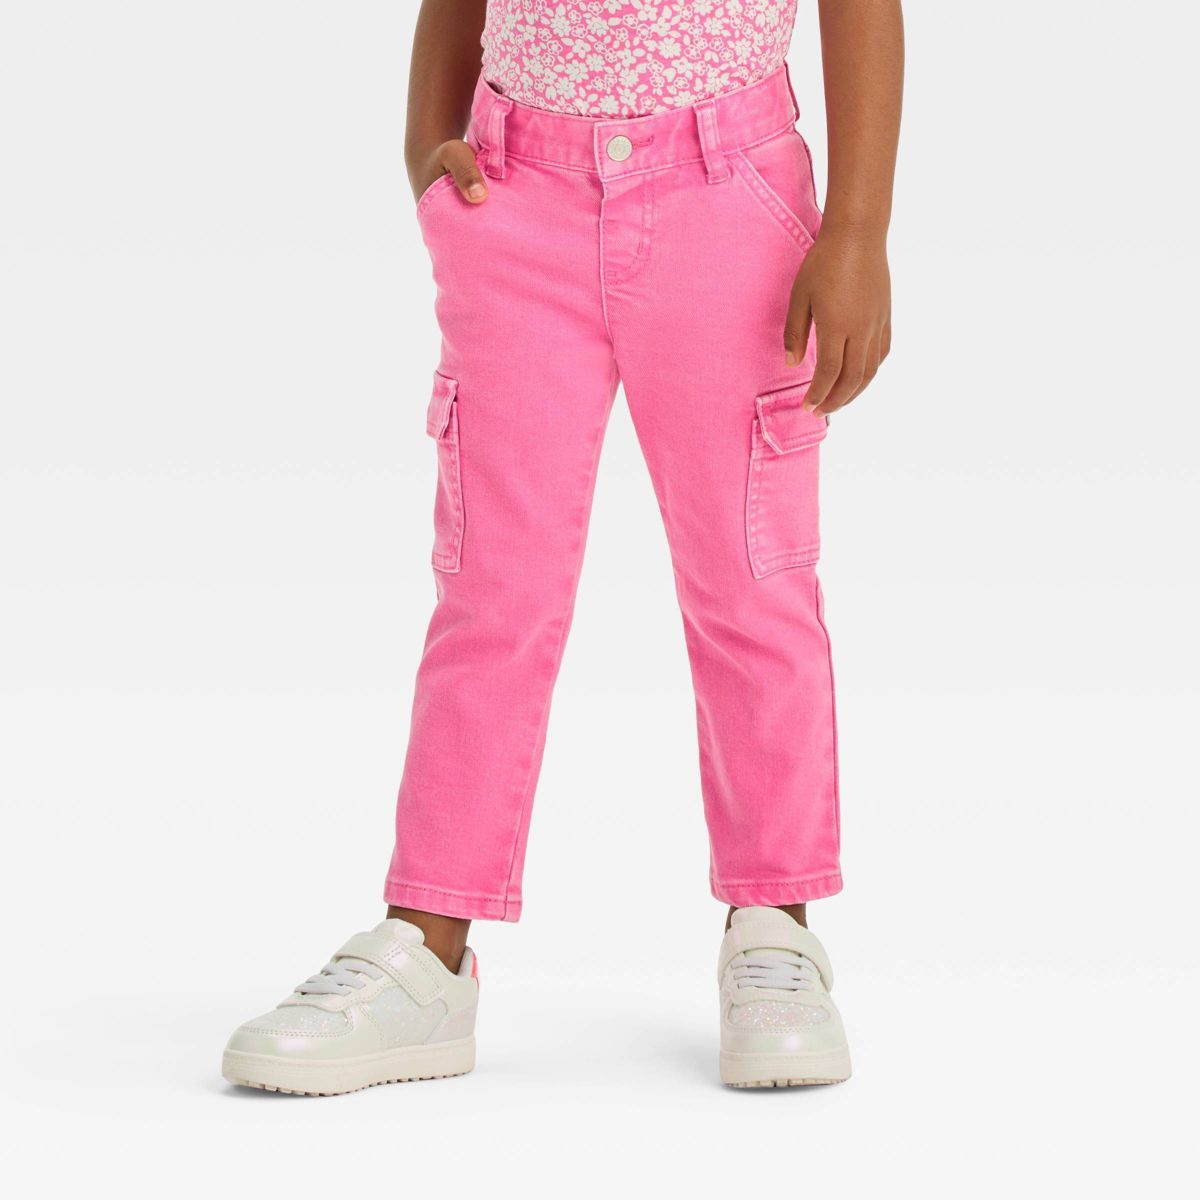 Toddler Girls' Cargo Pants - Cat & Jack™ Pink 2T | Target